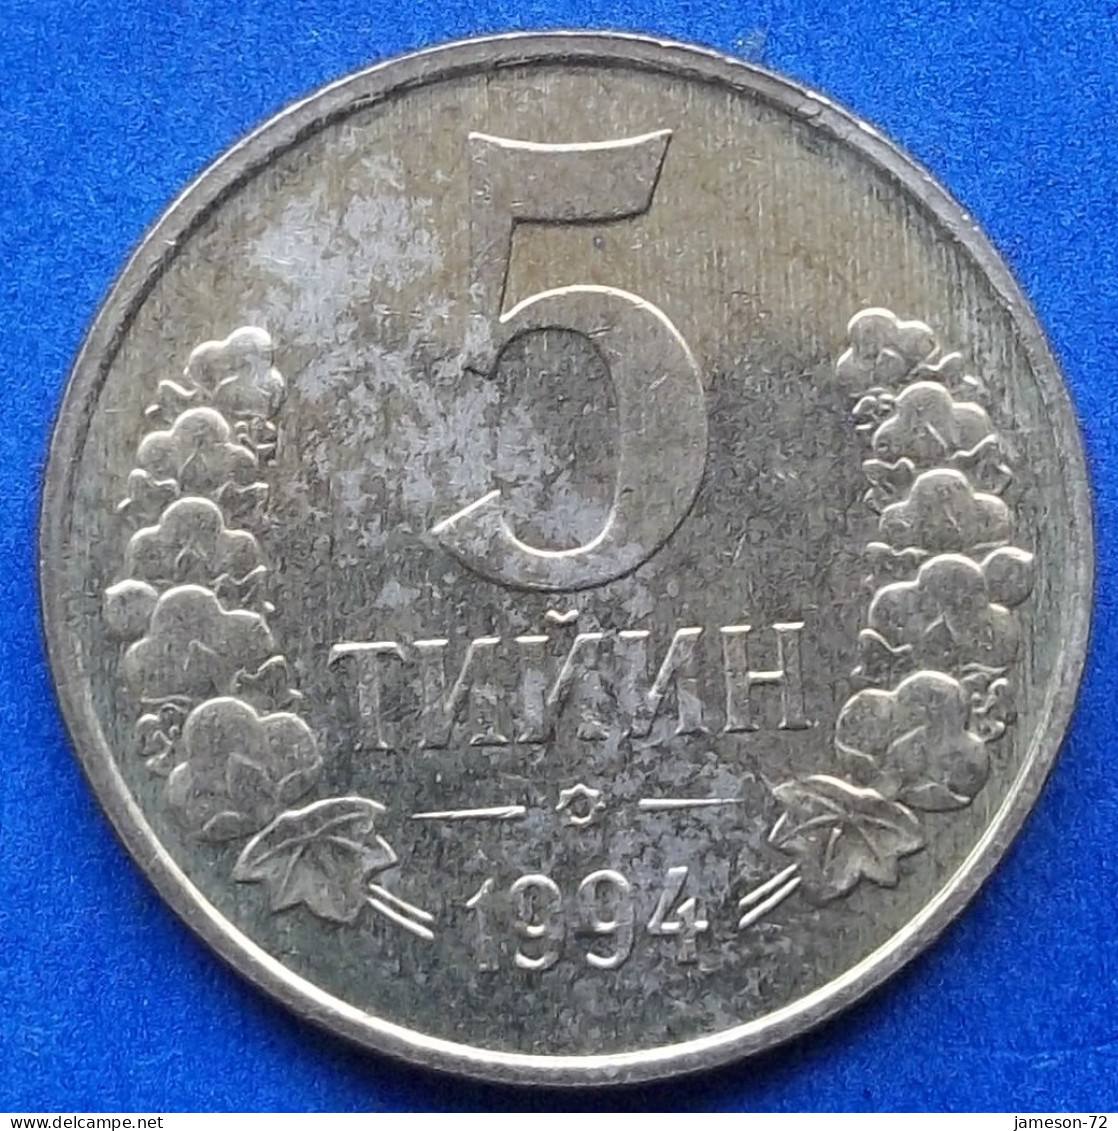 UZBEKISTAN - 5 Tiyin 1994 KM# 3 Independent Republic (1991) - Edelweiss Coins - Ouzbékistan